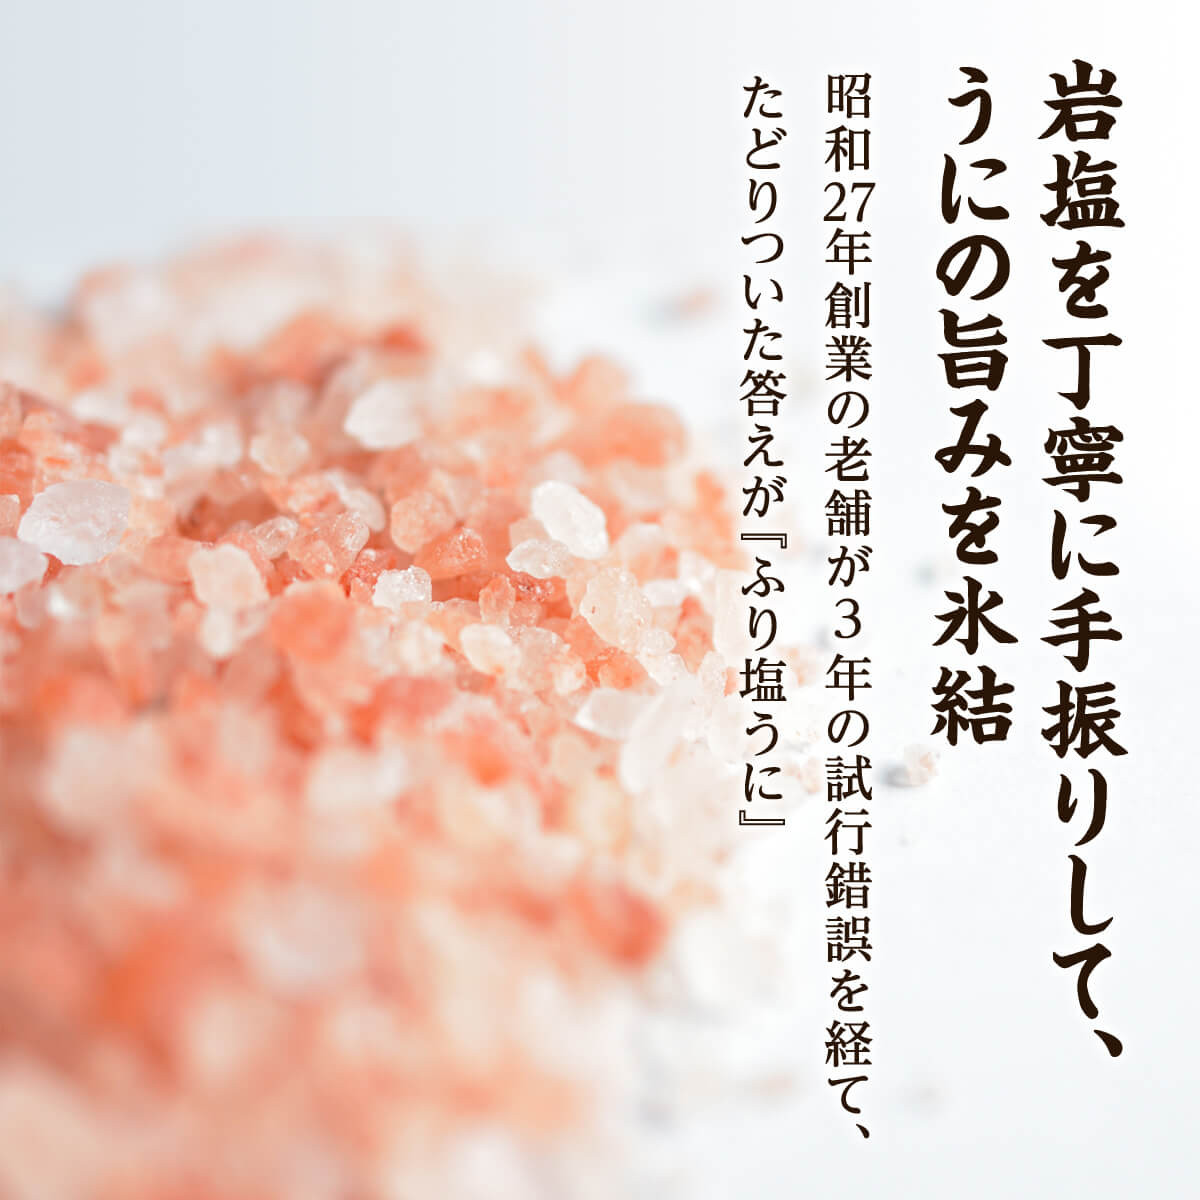 水揚げ分のみ 北海道産天然キタムラサキウニで作った ふり塩うに 100g 数量限定 北海道鹿部町 ふるさと納税 ふるさとチョイス